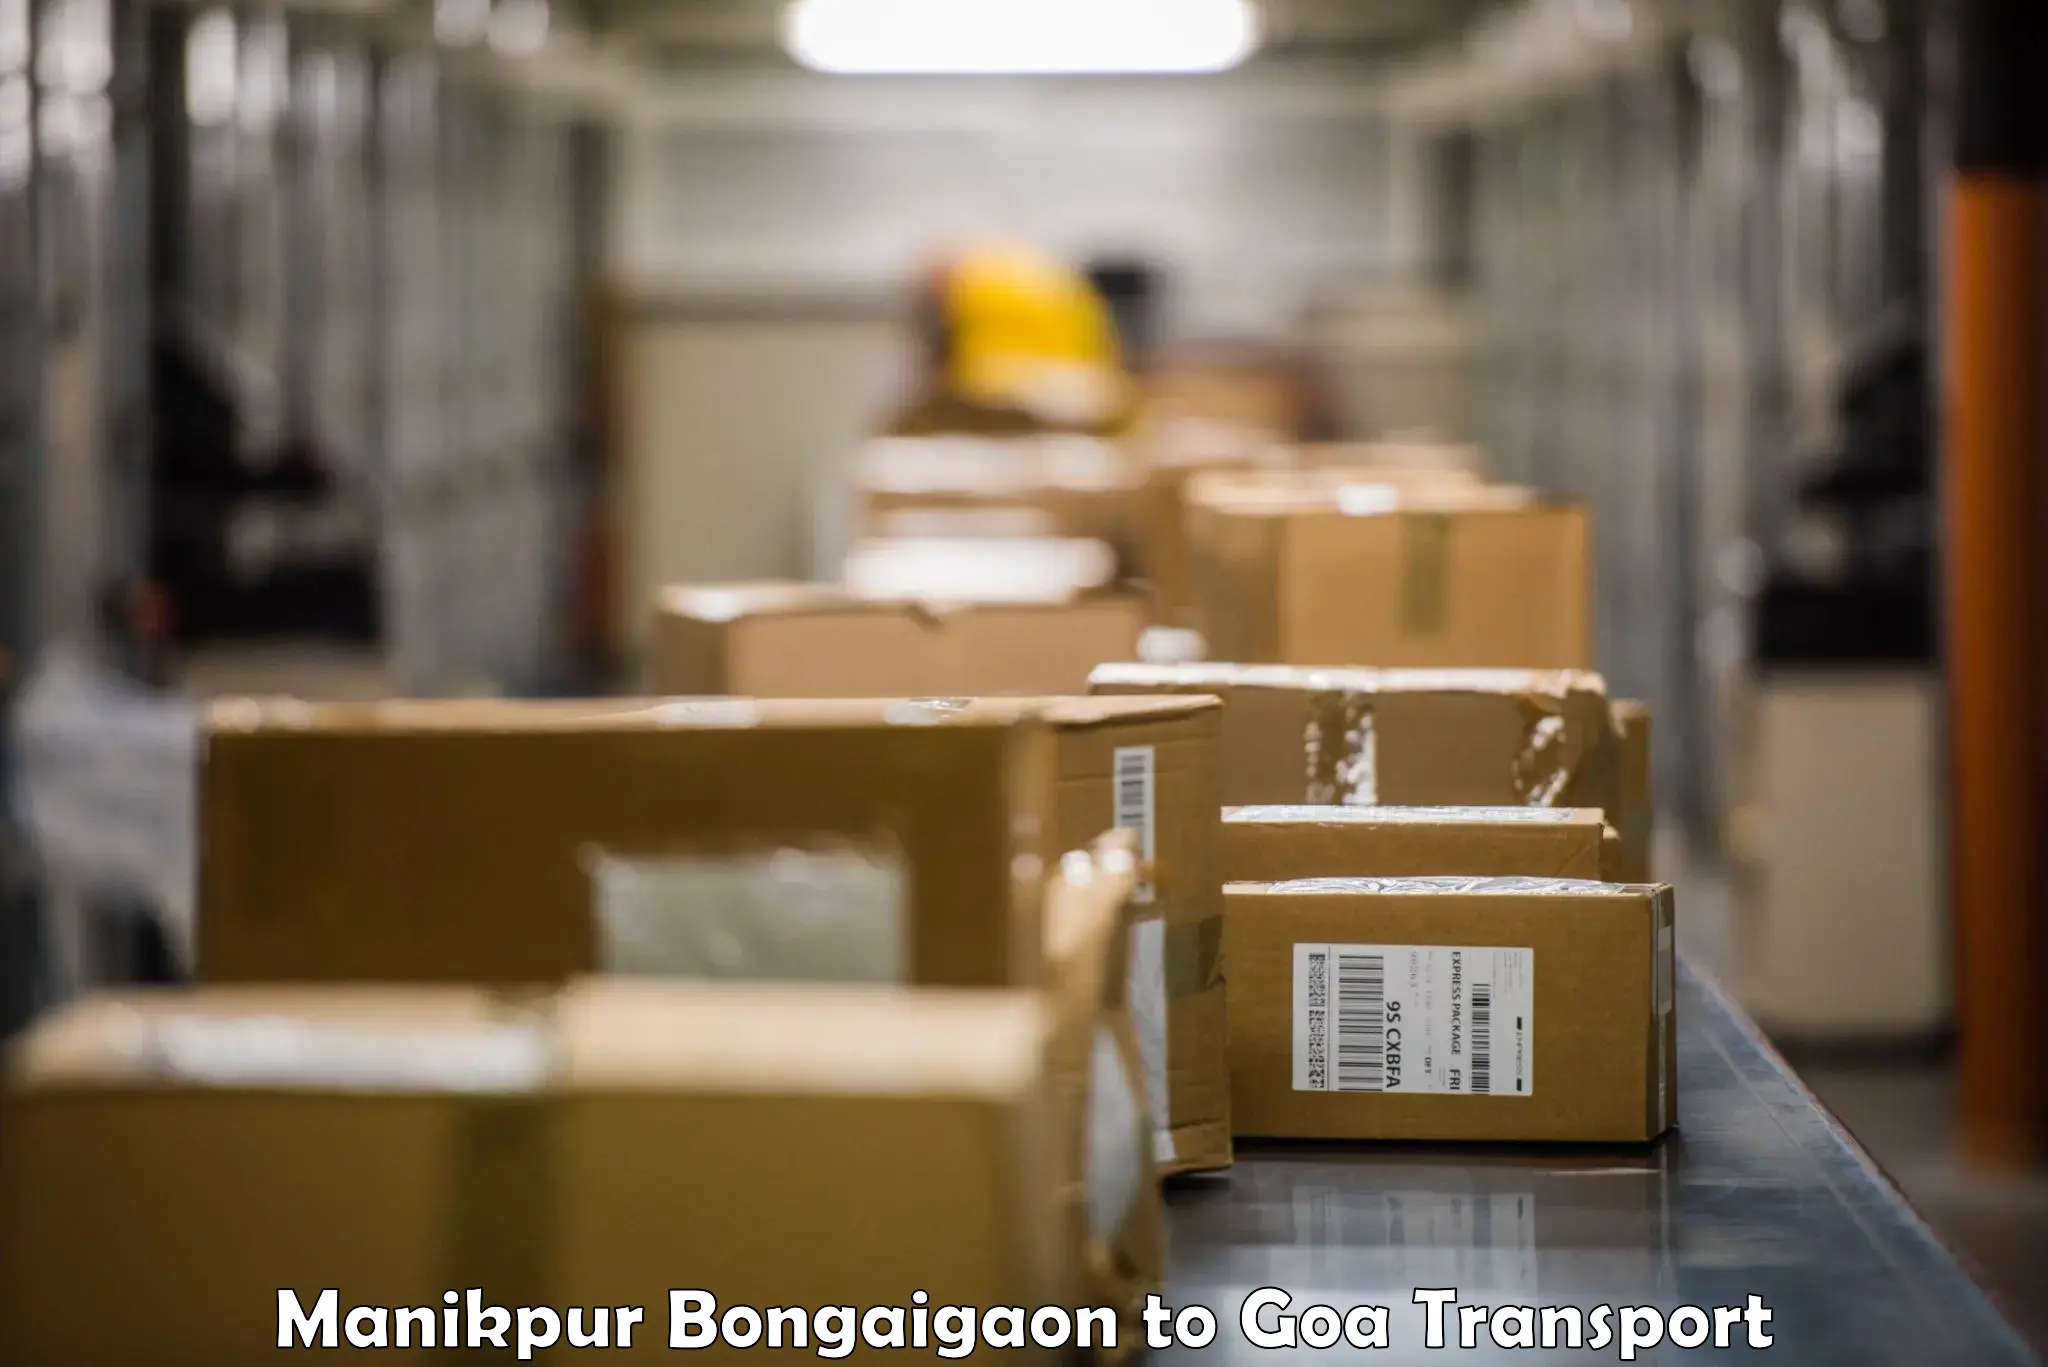 Container transport service Manikpur Bongaigaon to Vasco da Gama